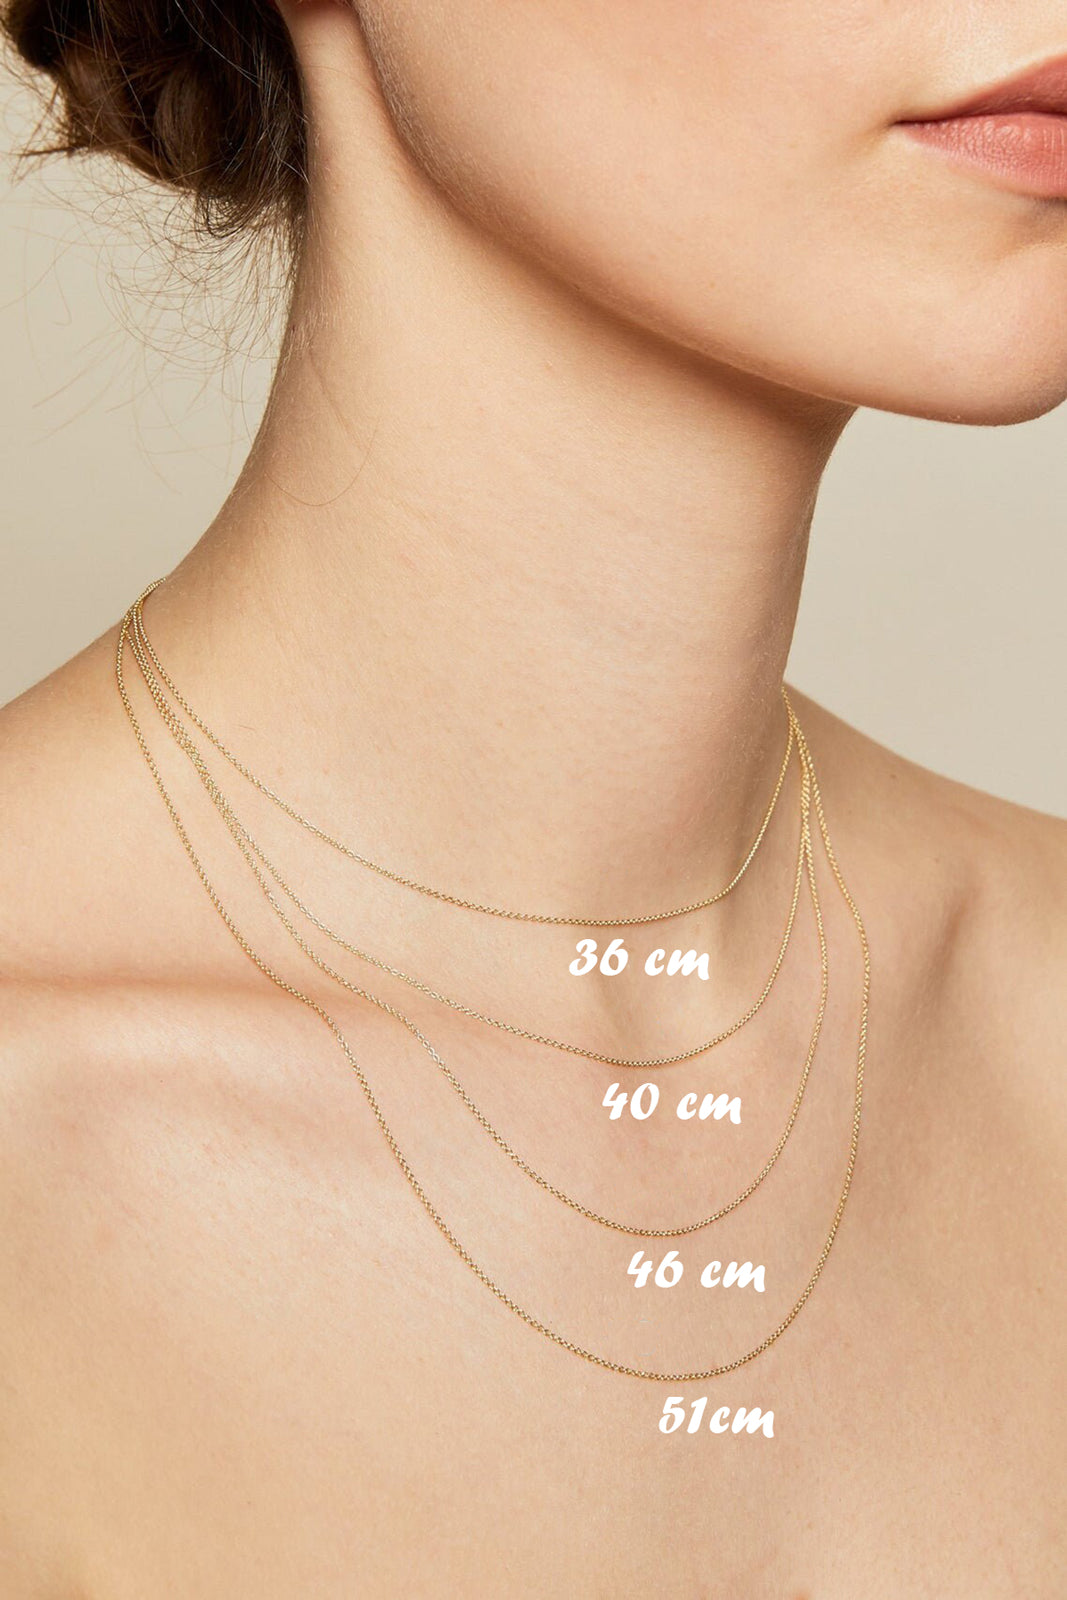 Square Waterway Necklace - 40 cm | by Eda Çetin Jewelry Design